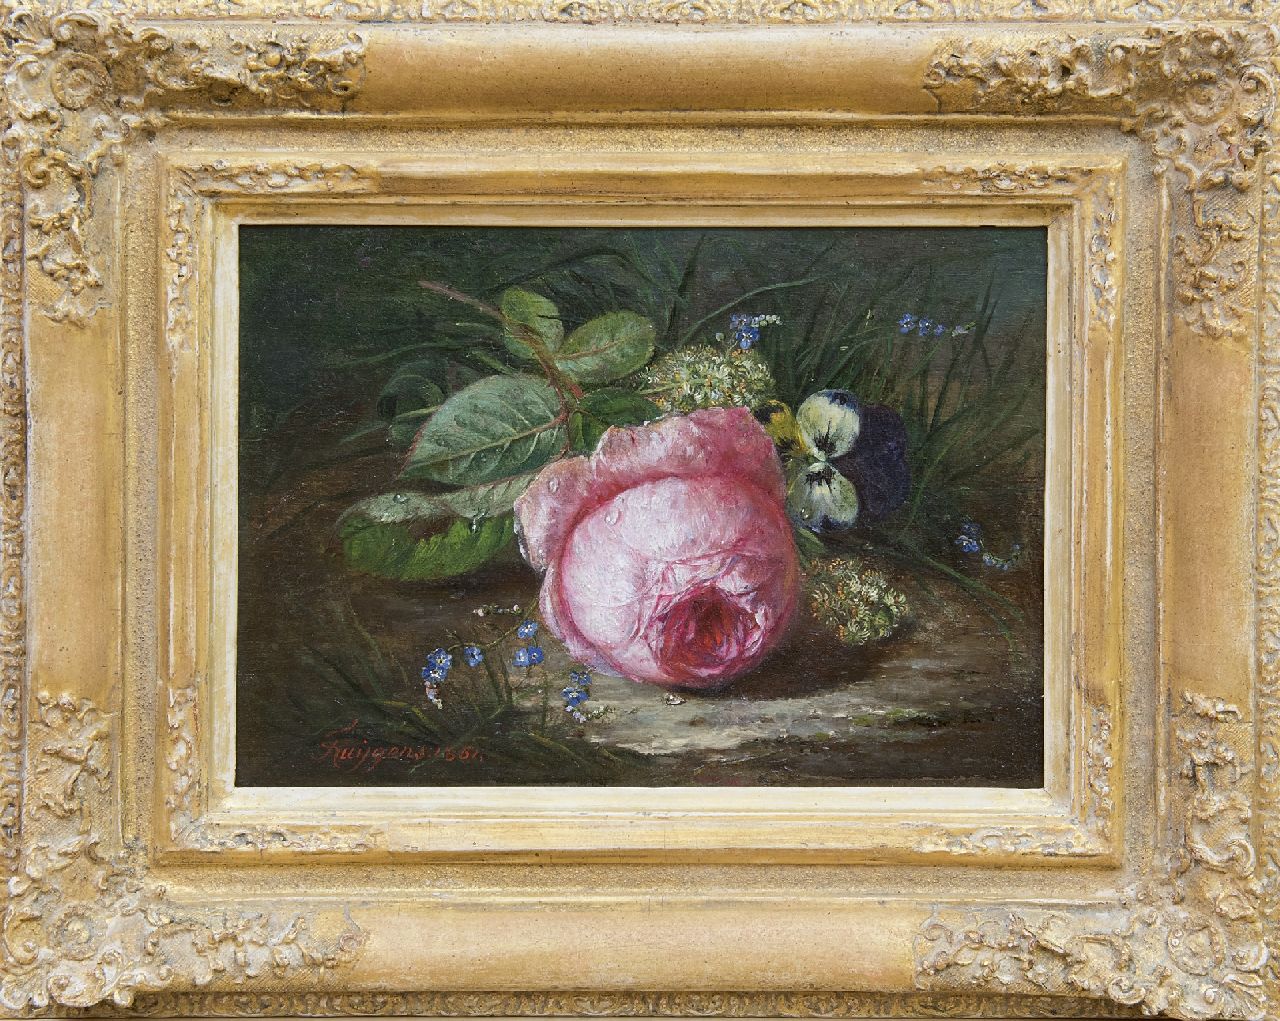 Huygens F.J.  | 'François' Joseph Huygens | Schilderijen te koop aangeboden | Roos en wilde bloemen op de bosgrond, olieverf op paneel 18,9 x 26,1 cm, gesigneerd linksonder en gedateerd 1861